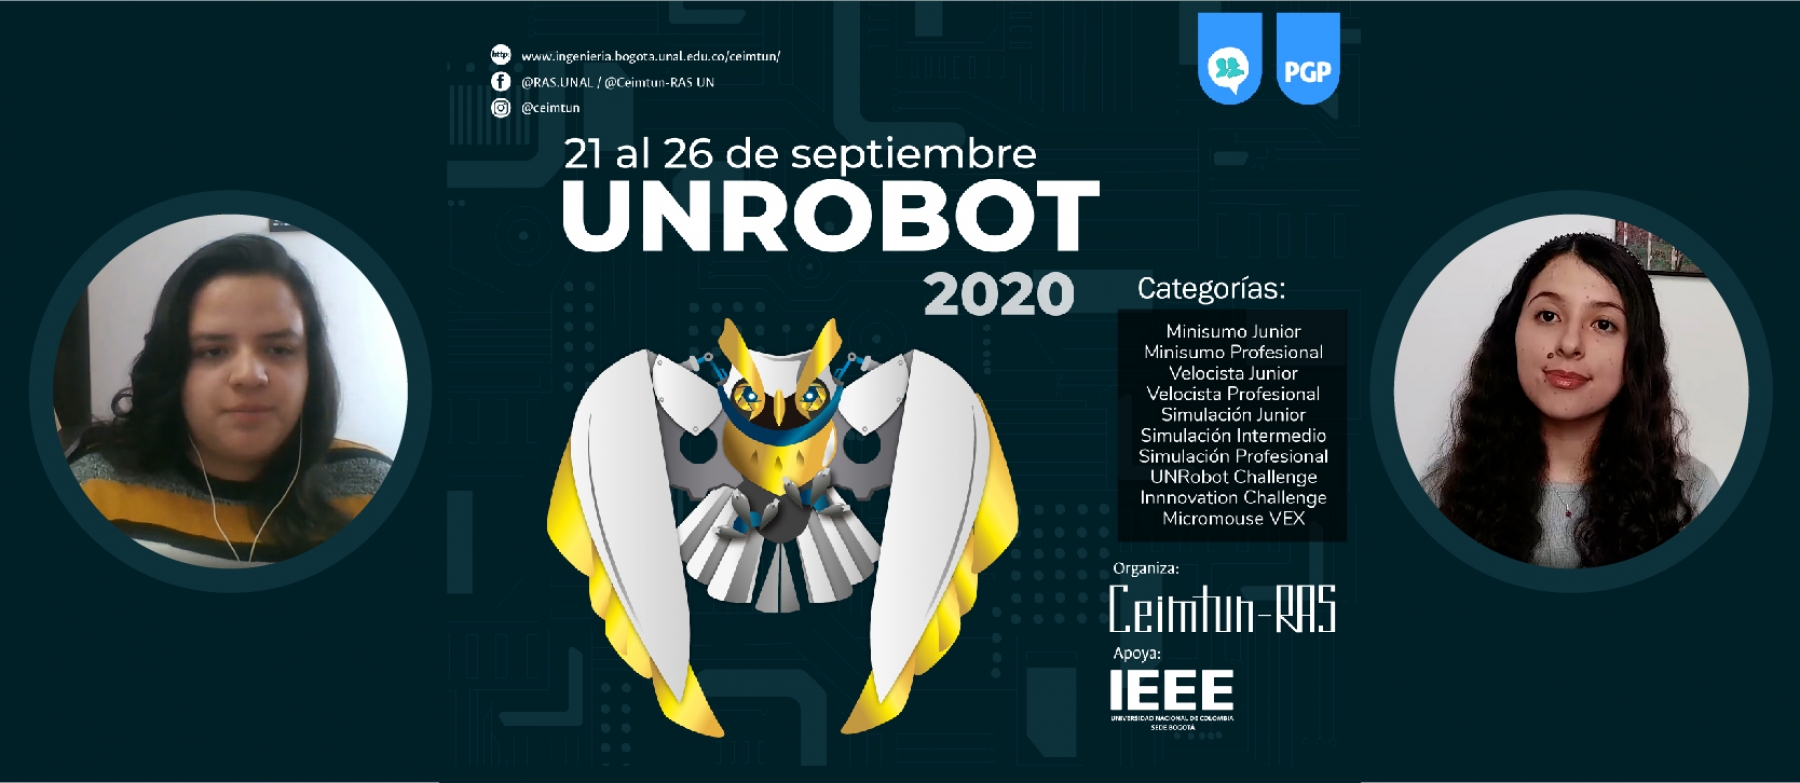 UNRobot 2020 el concurso de robótica gratuito más grande de Colombia y este año, contará con la participación de varios países